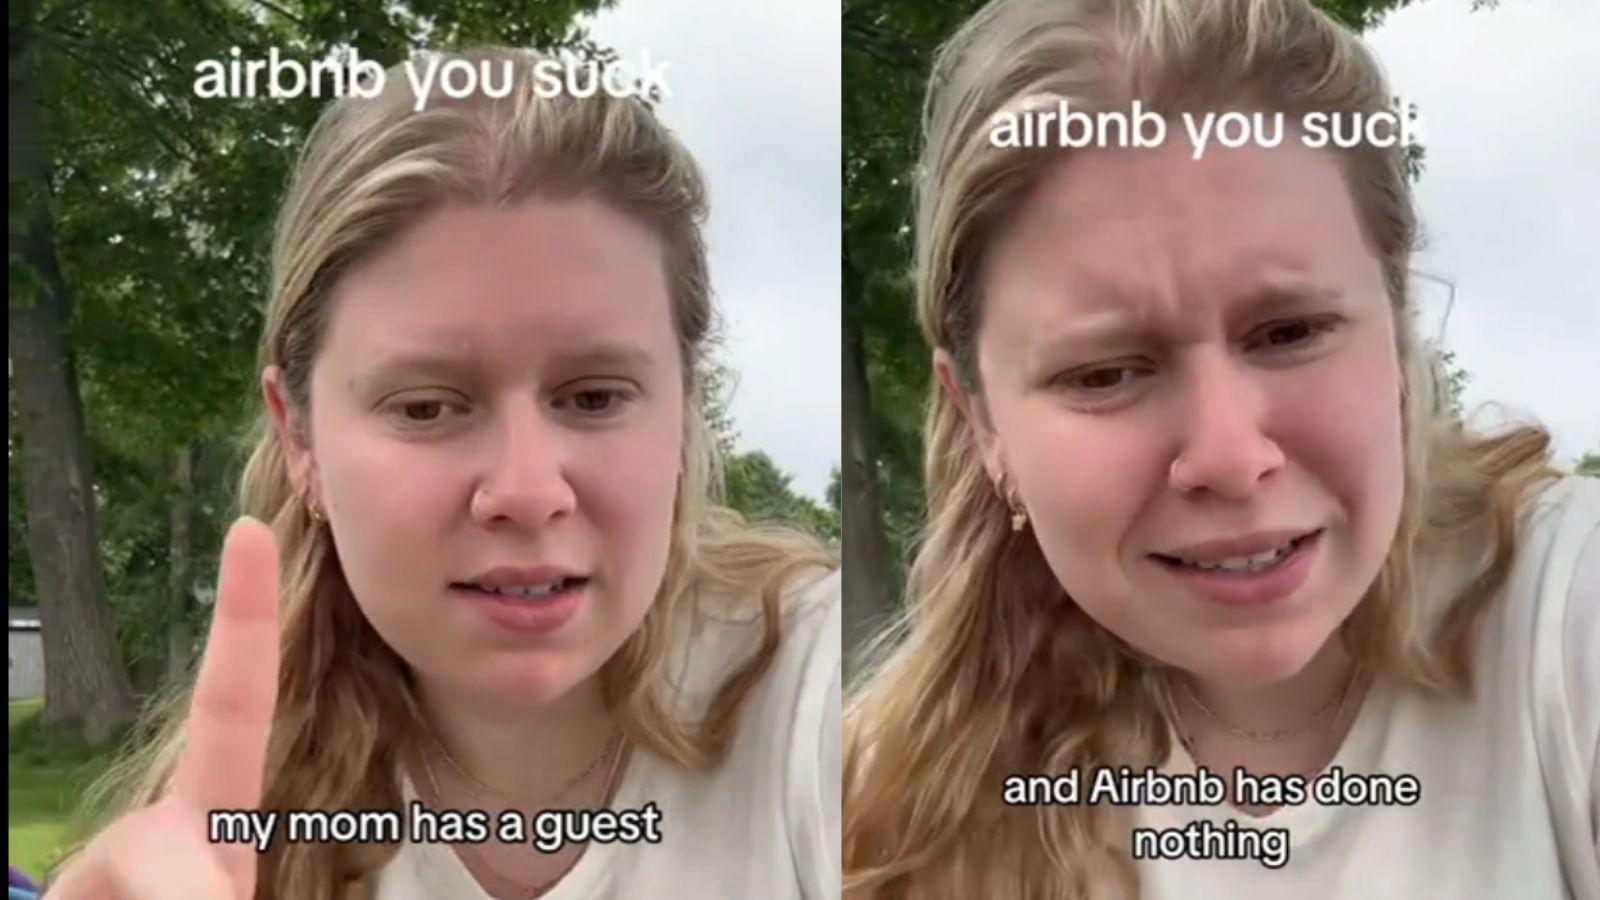 tiktoker complaints about airbnb